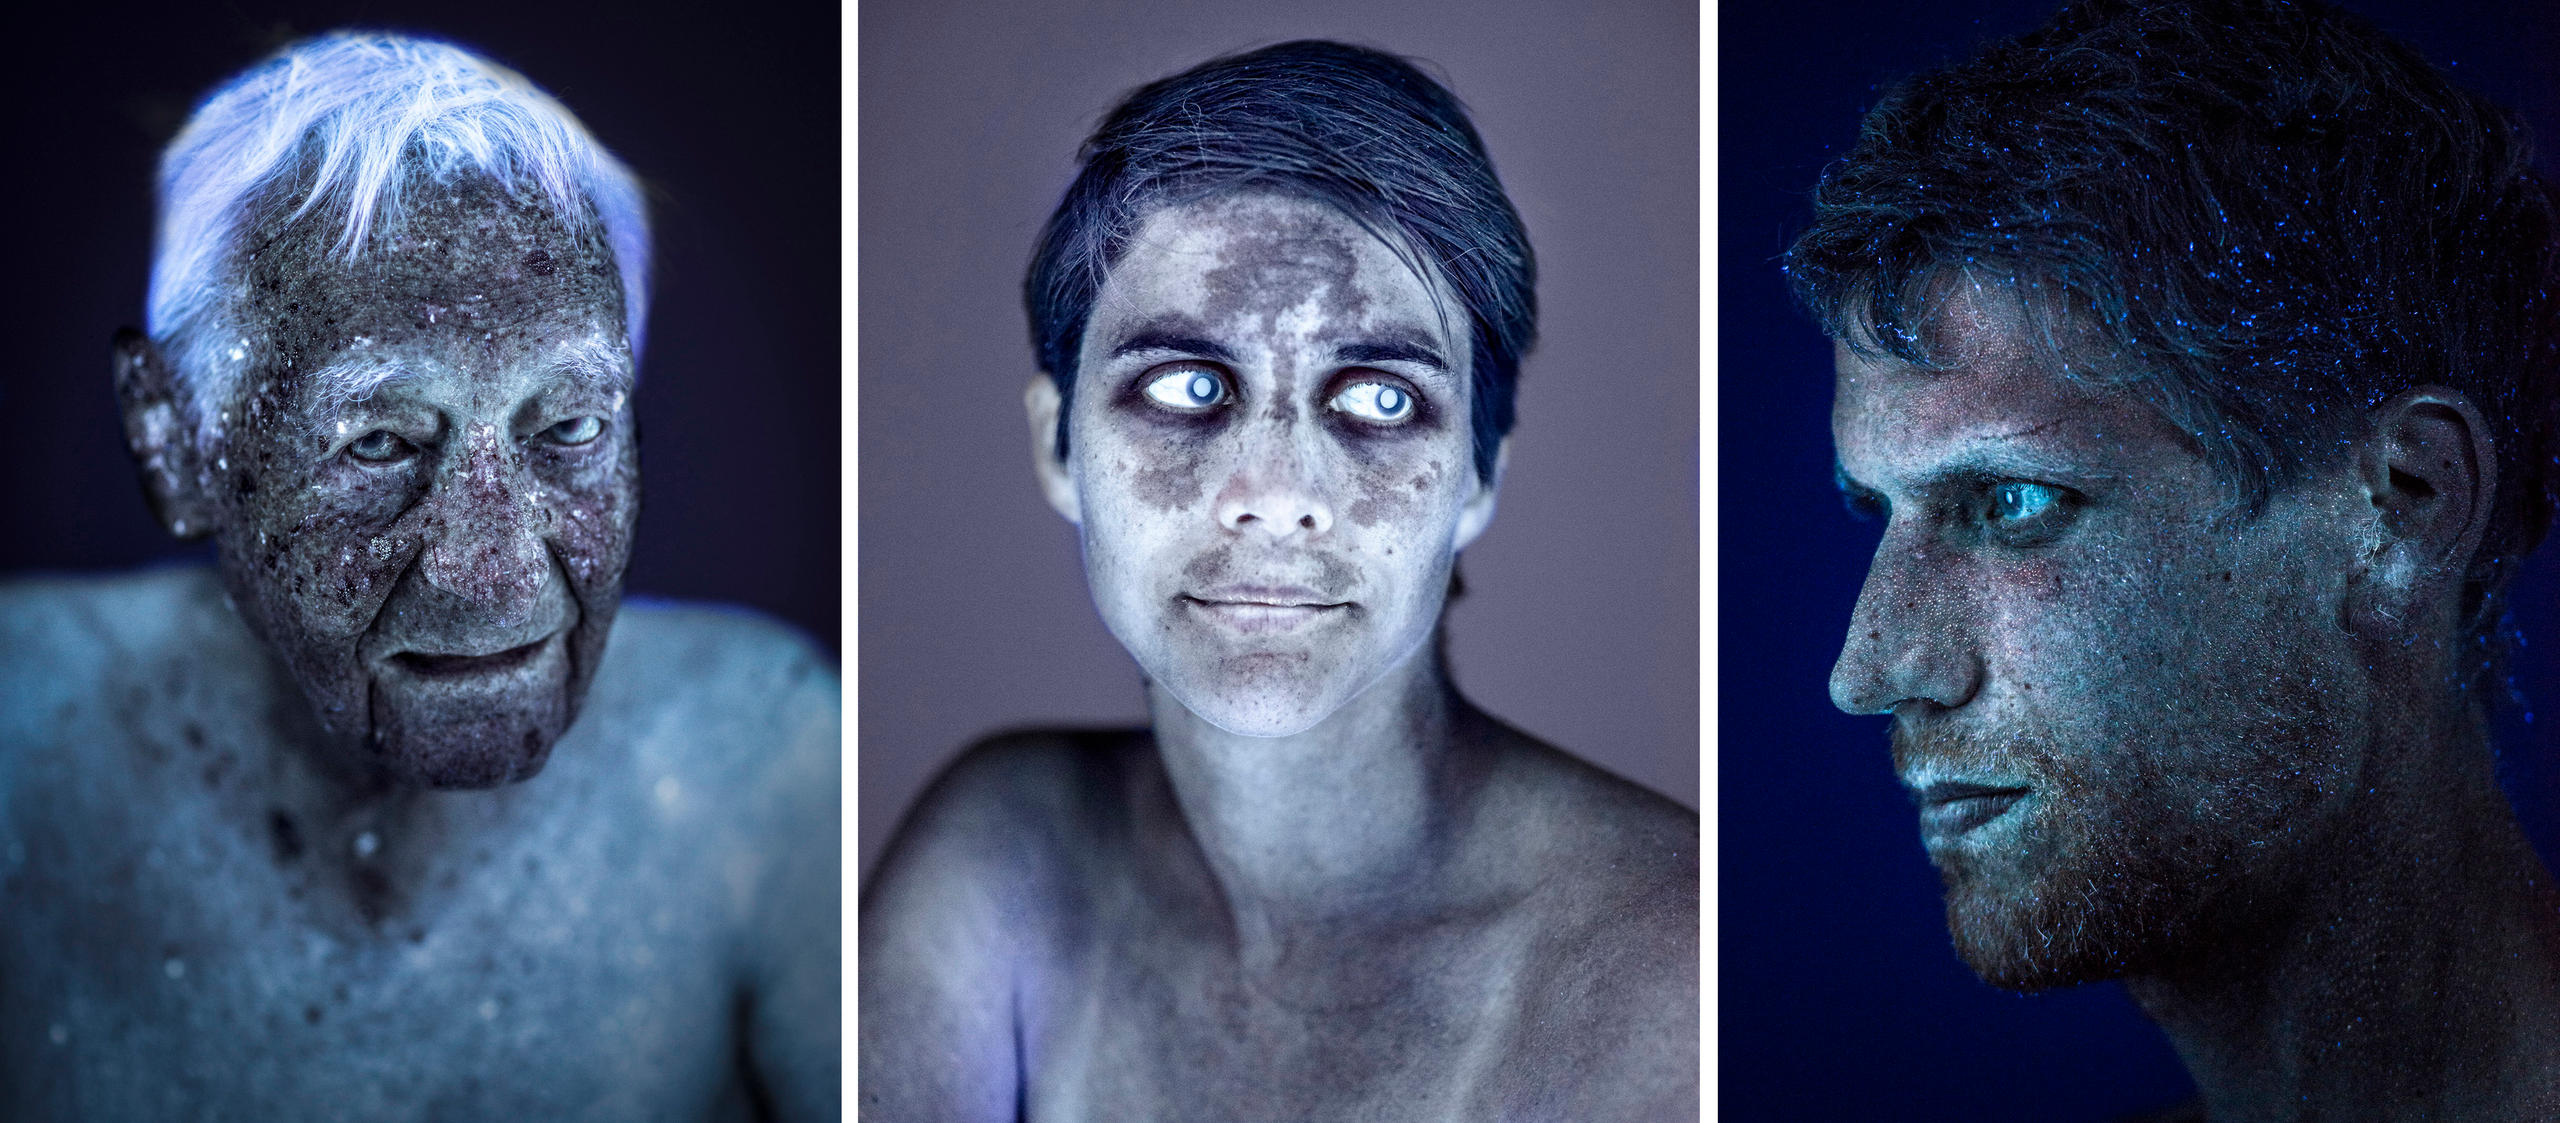 Drei Portraits von Personen in Ultraviolettem Licht